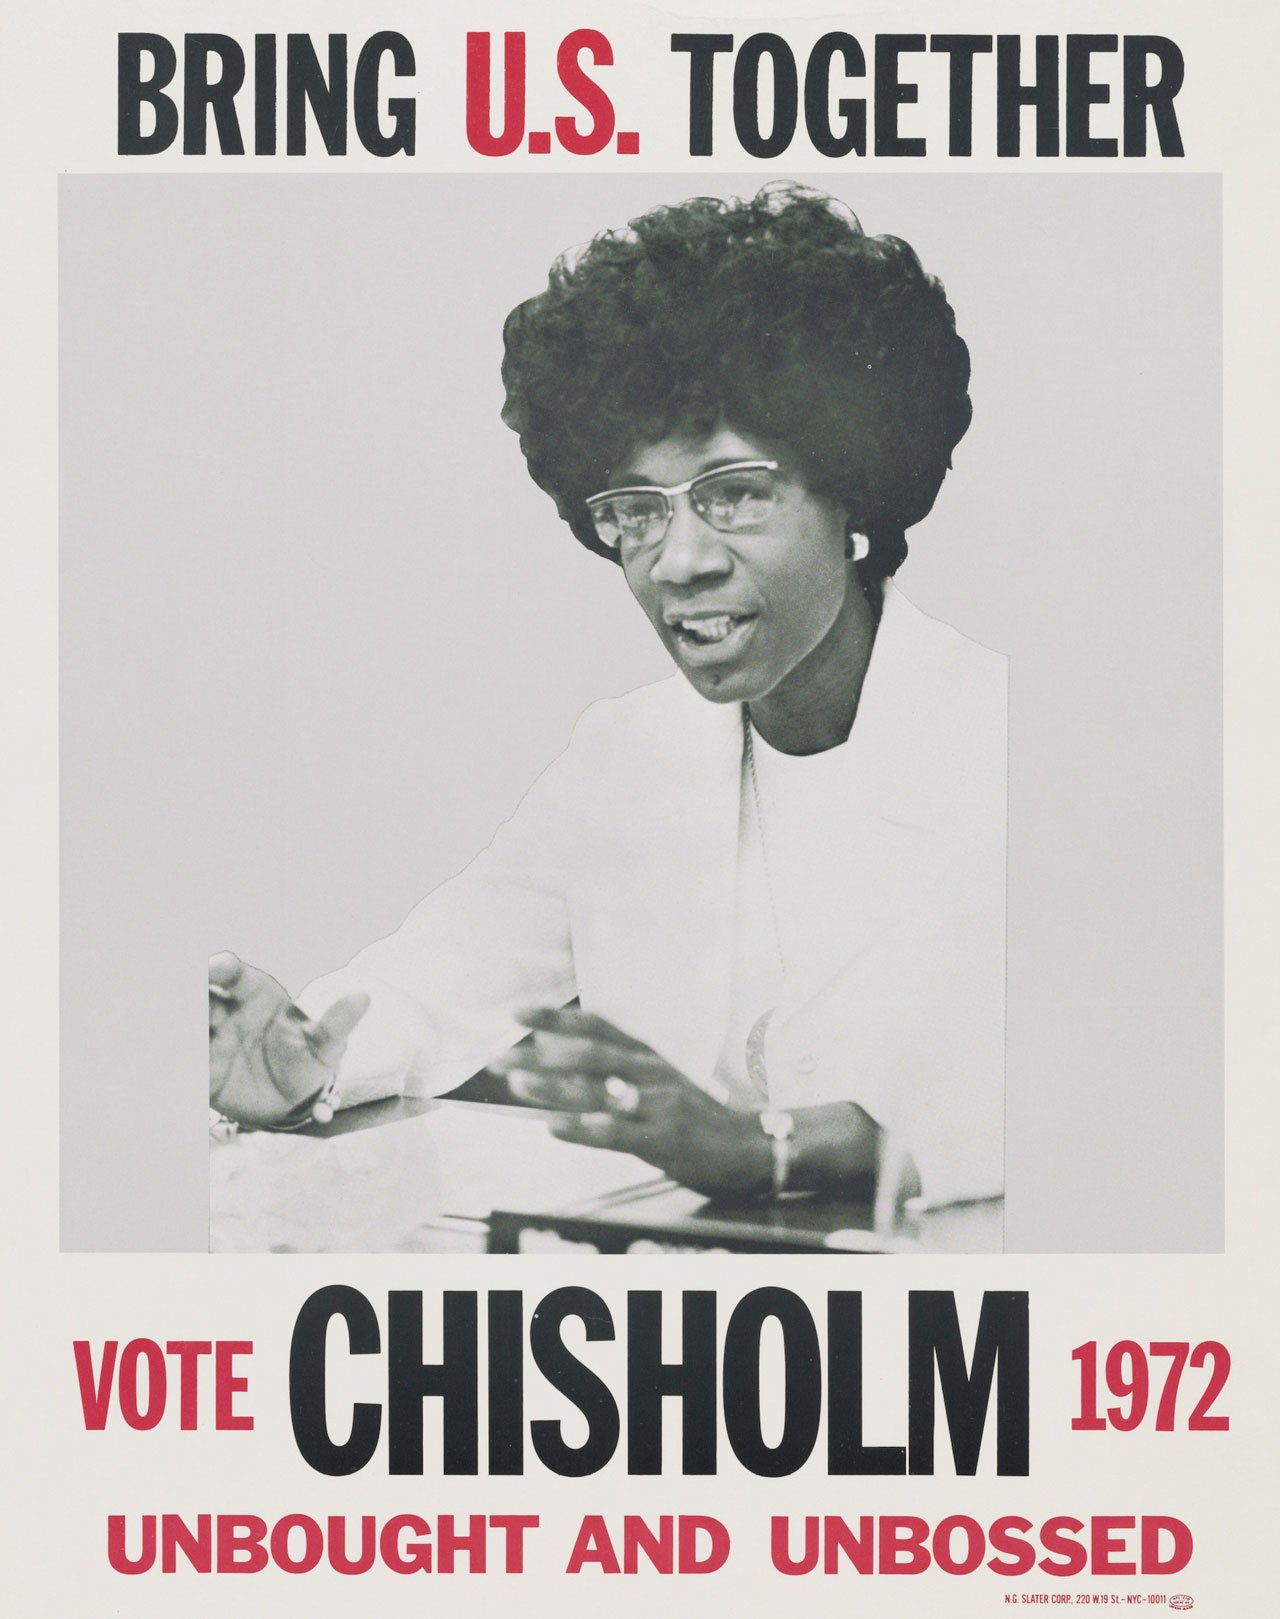 Affiche de Shirley Chisholm, candidate à l'élection présidentielle américaine de 1972 pour le parti démocrate.